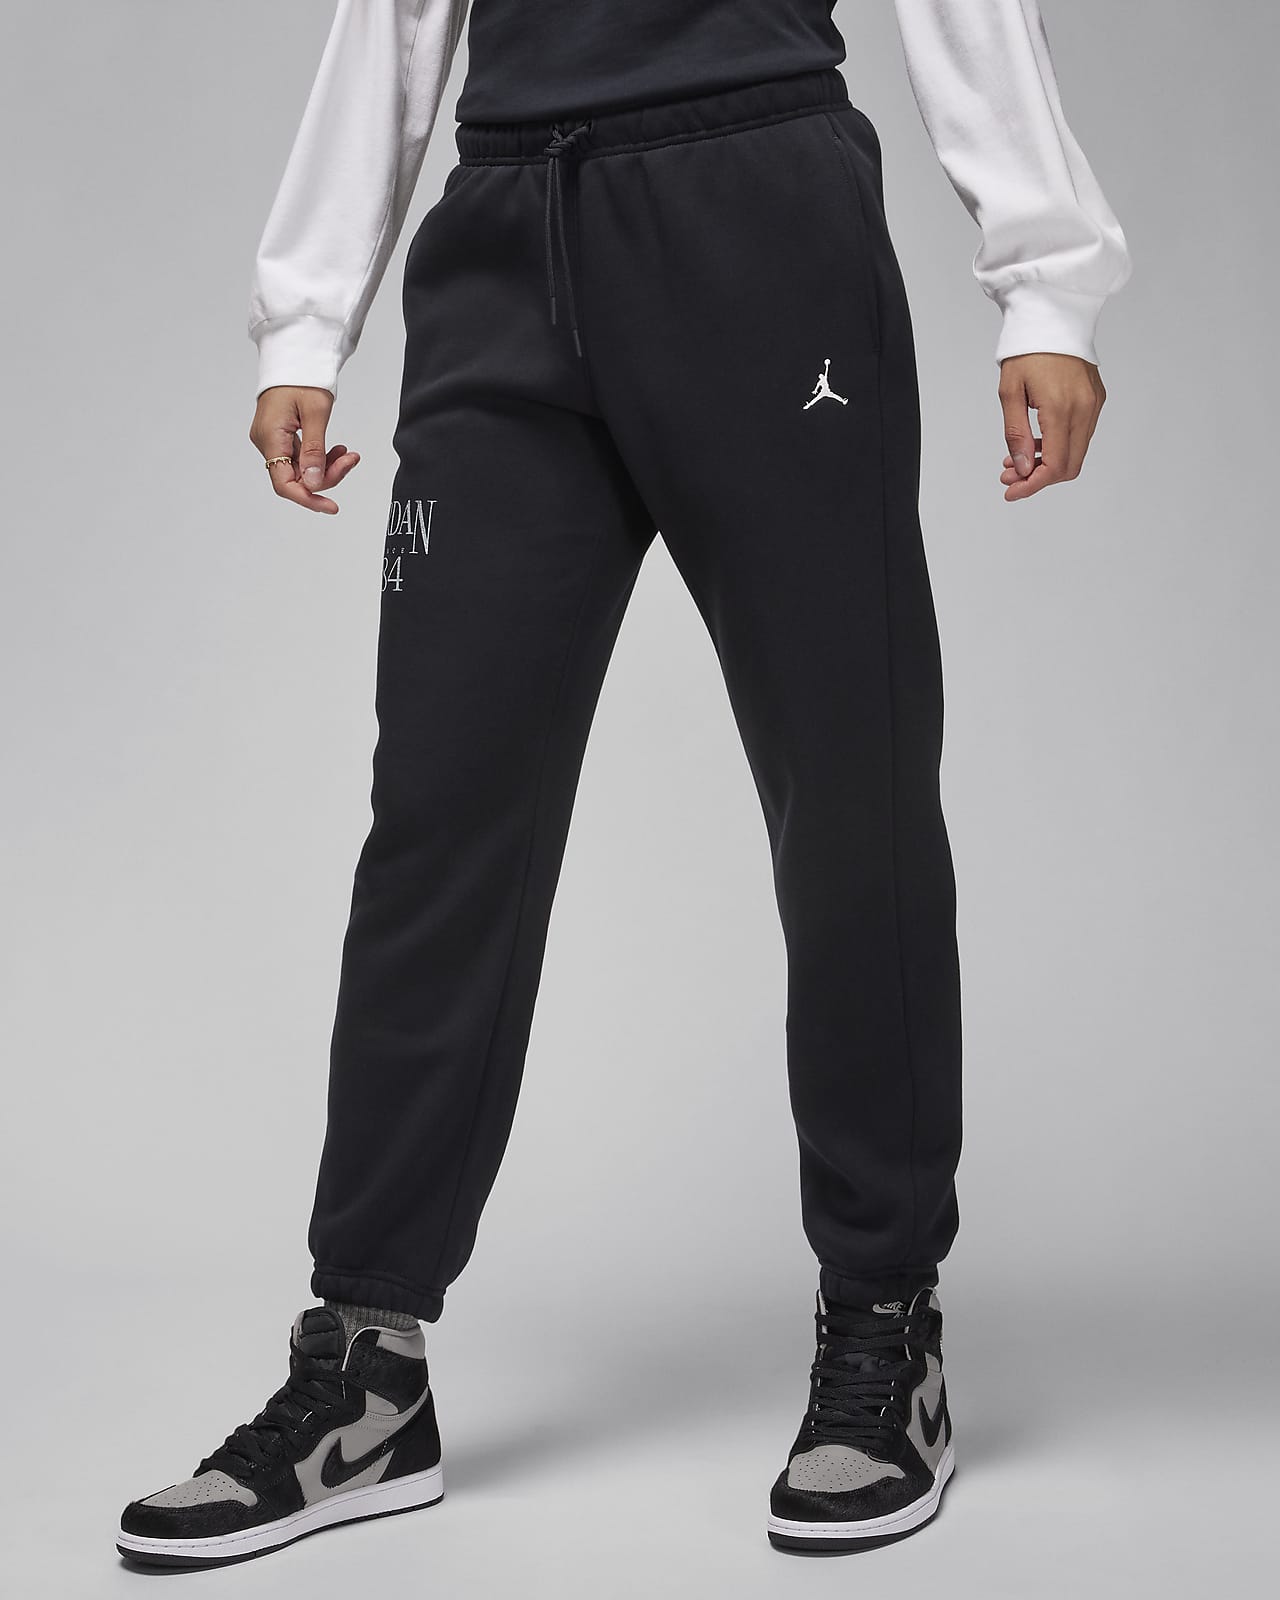 Pants para mujer Jordan Brooklyn Fleece. Nike MX